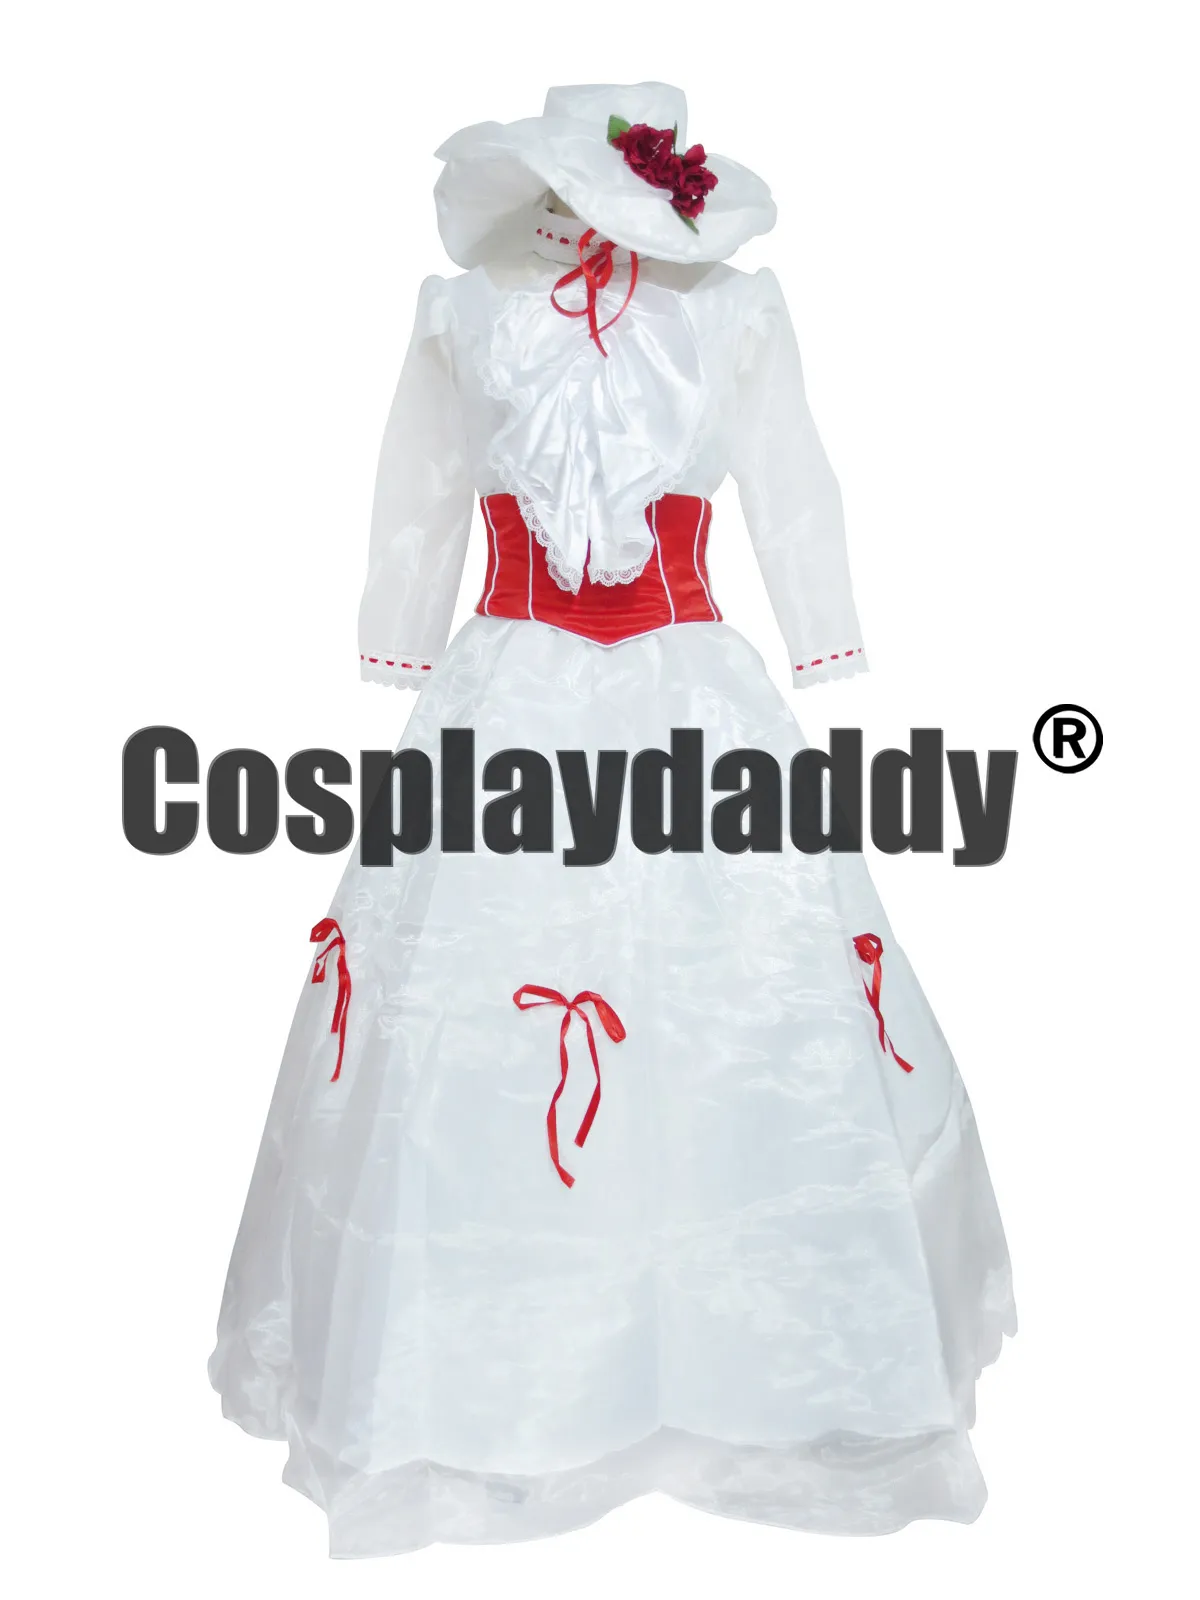 Costume cosplay del vestito da partito bianco della principessa Mary del film Mary Poppins305R